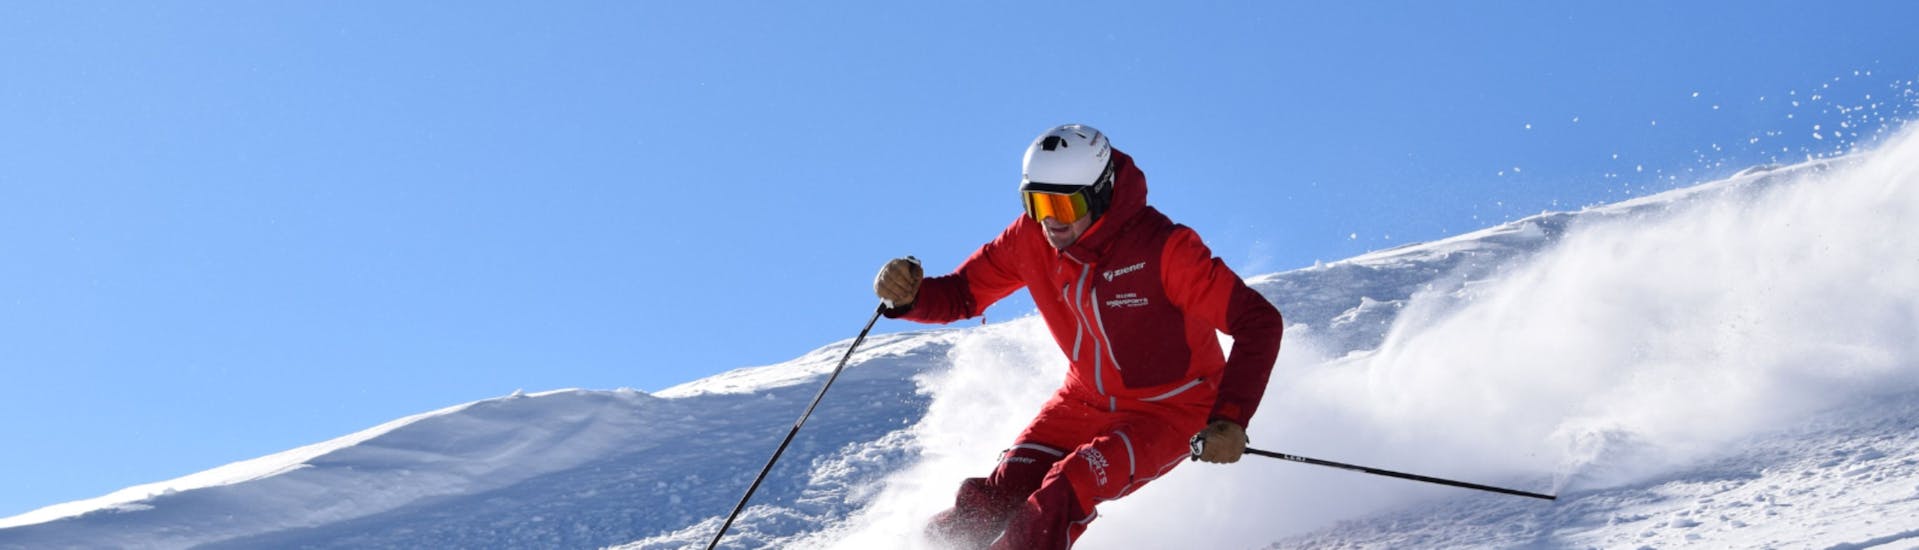 Cours de ski Adultes dès 15 ans - Expérimentés.